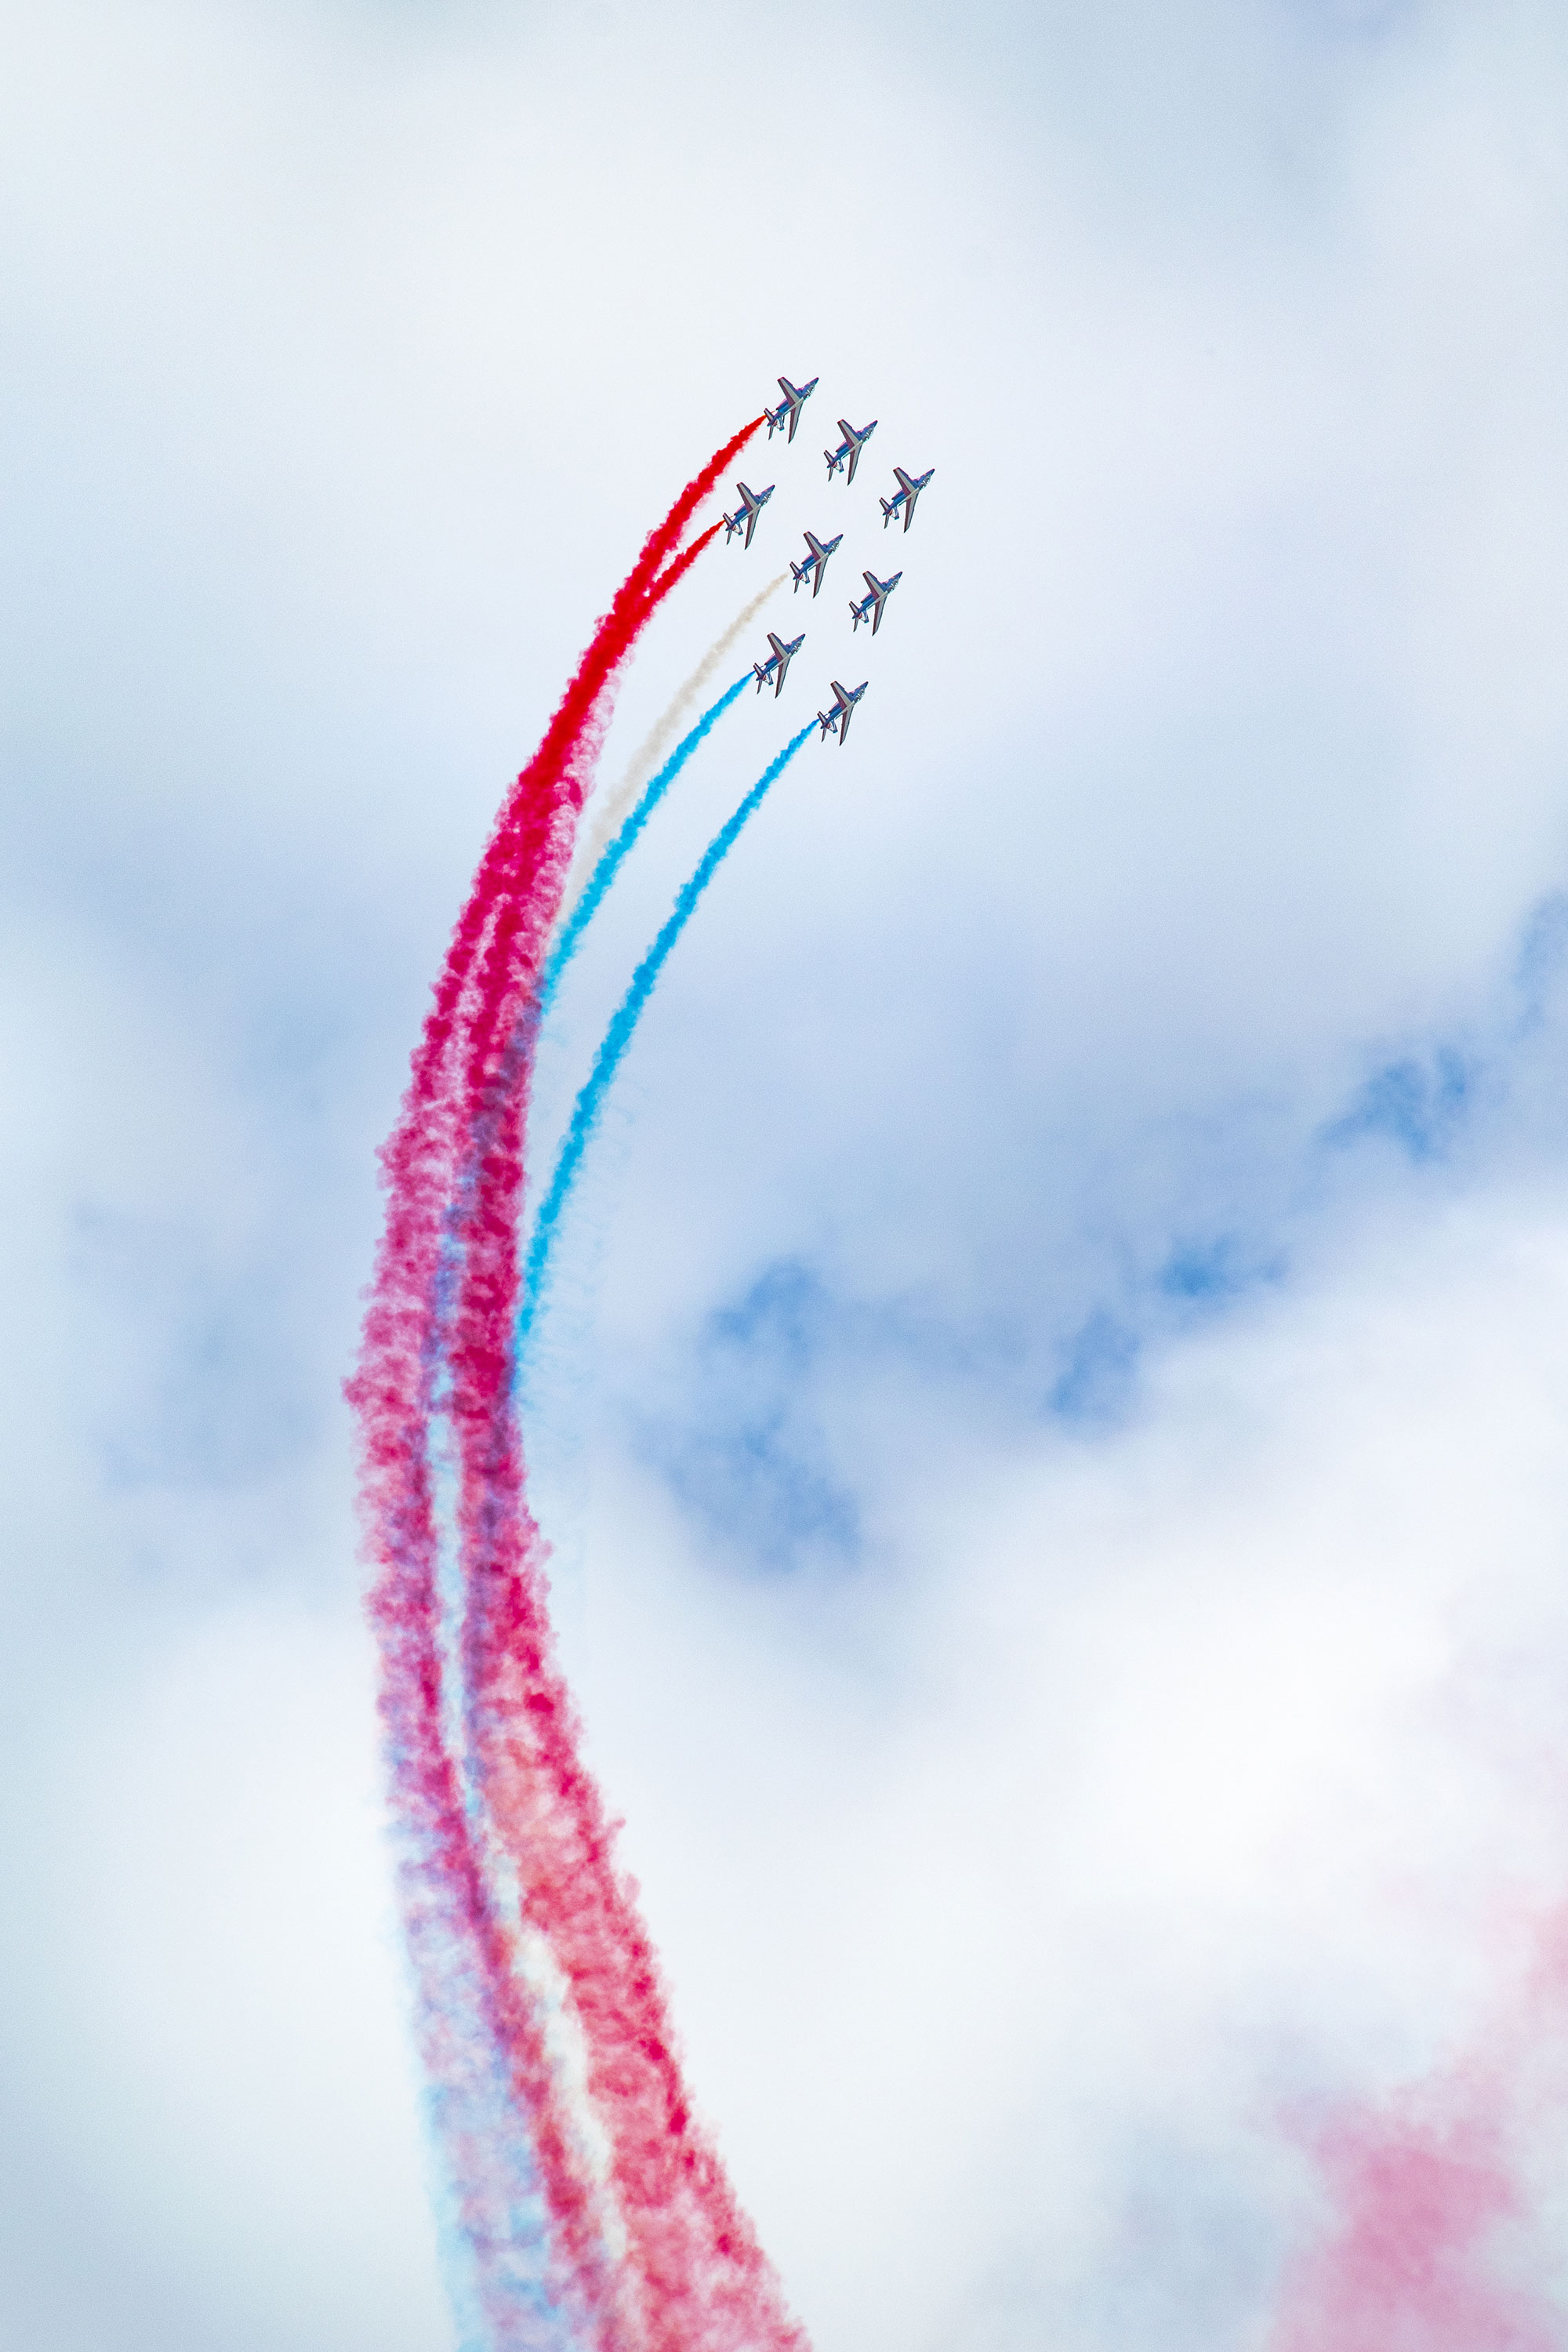 Patrouille de France, Alphajet, Armée de l'Air et de l'Espace, Air Legend 2021, Nos Dren